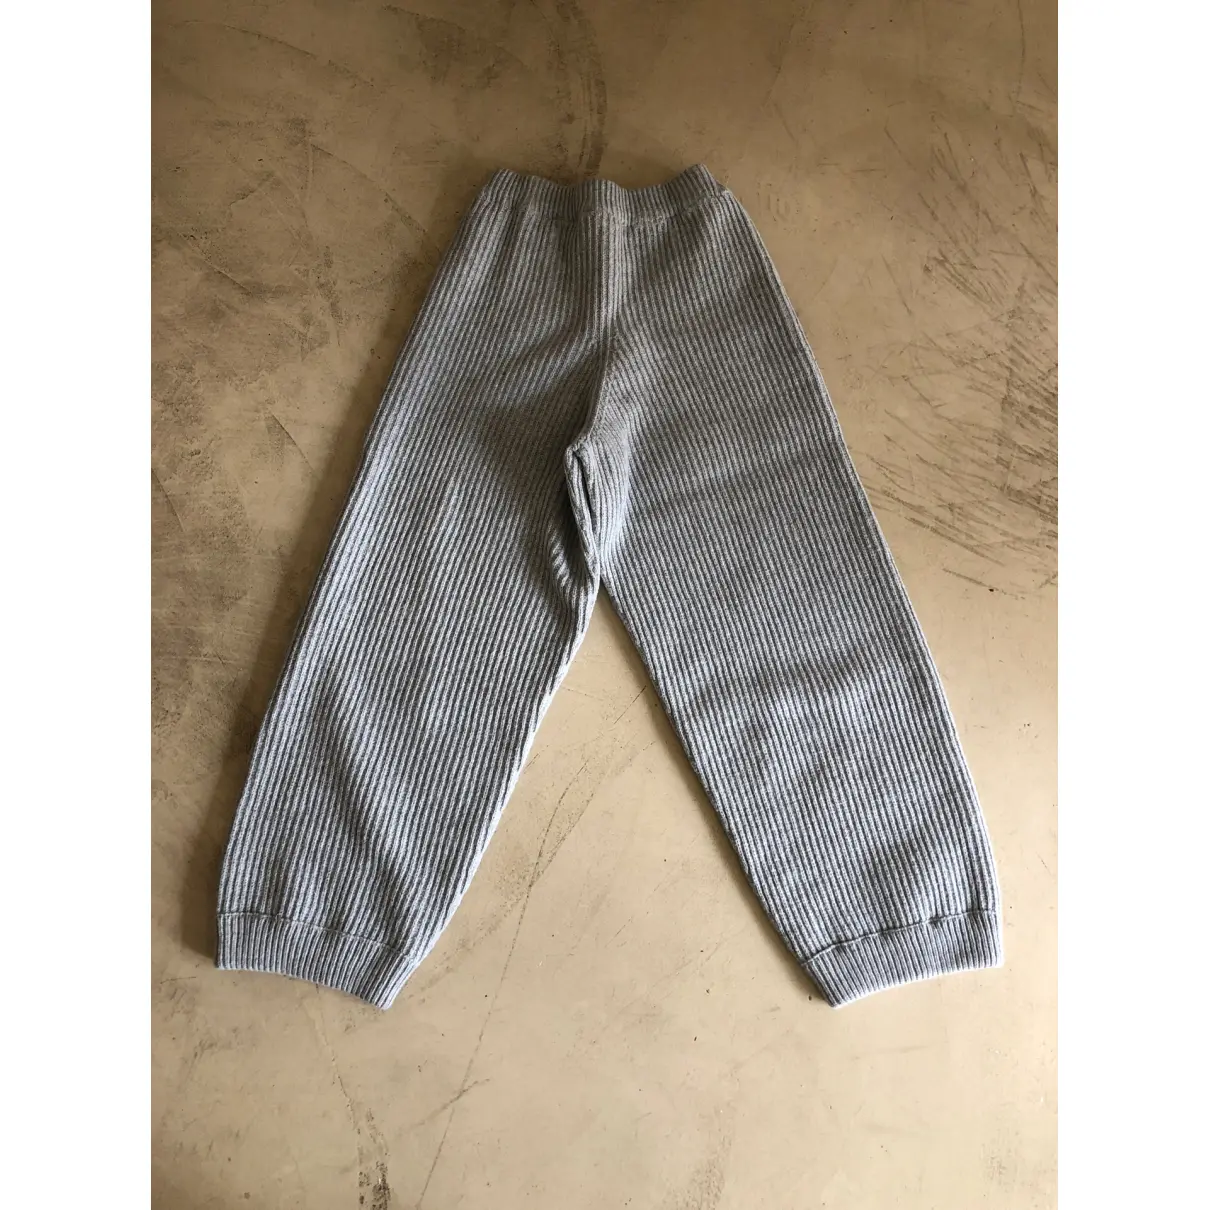 Buy Baserange Wool large pants online